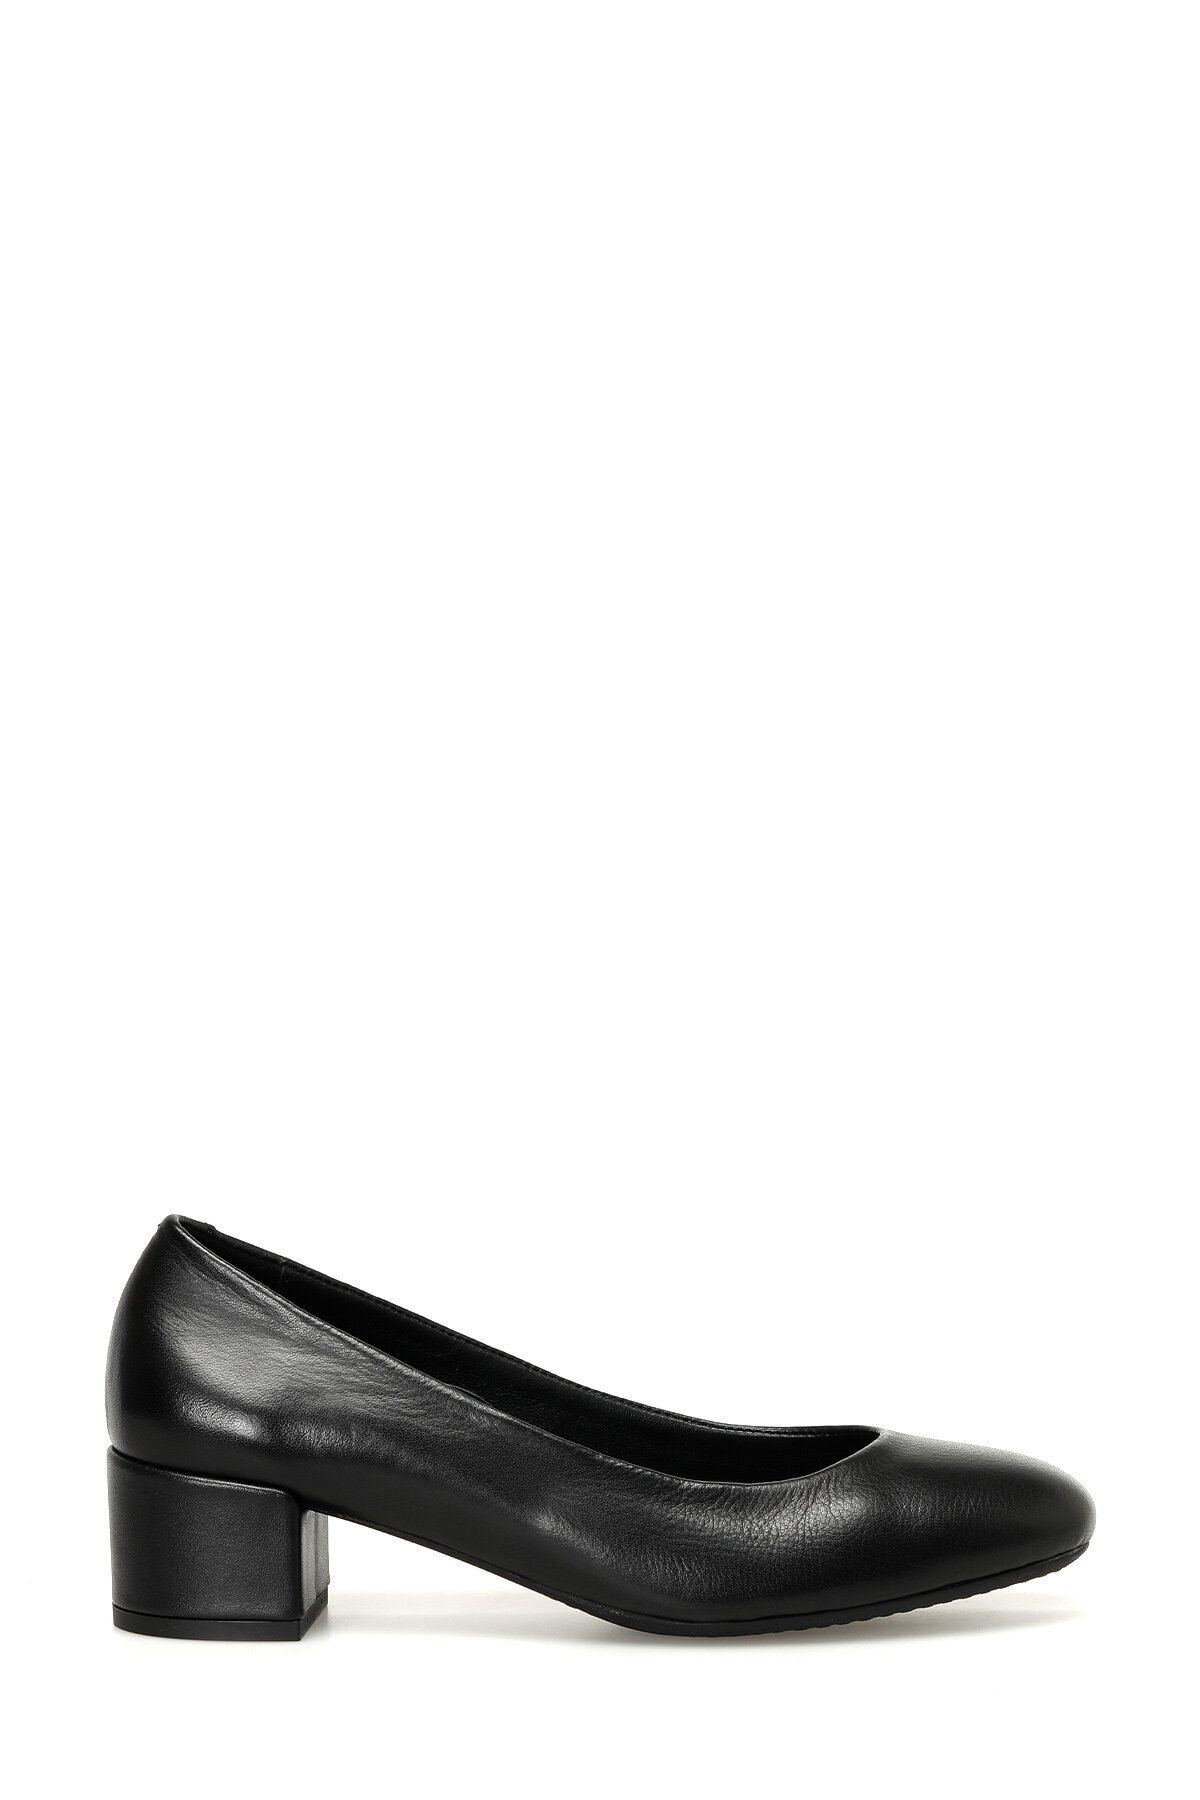 İnci MALVA 3PR Siyah Kadın Topuklu Ayakkabı